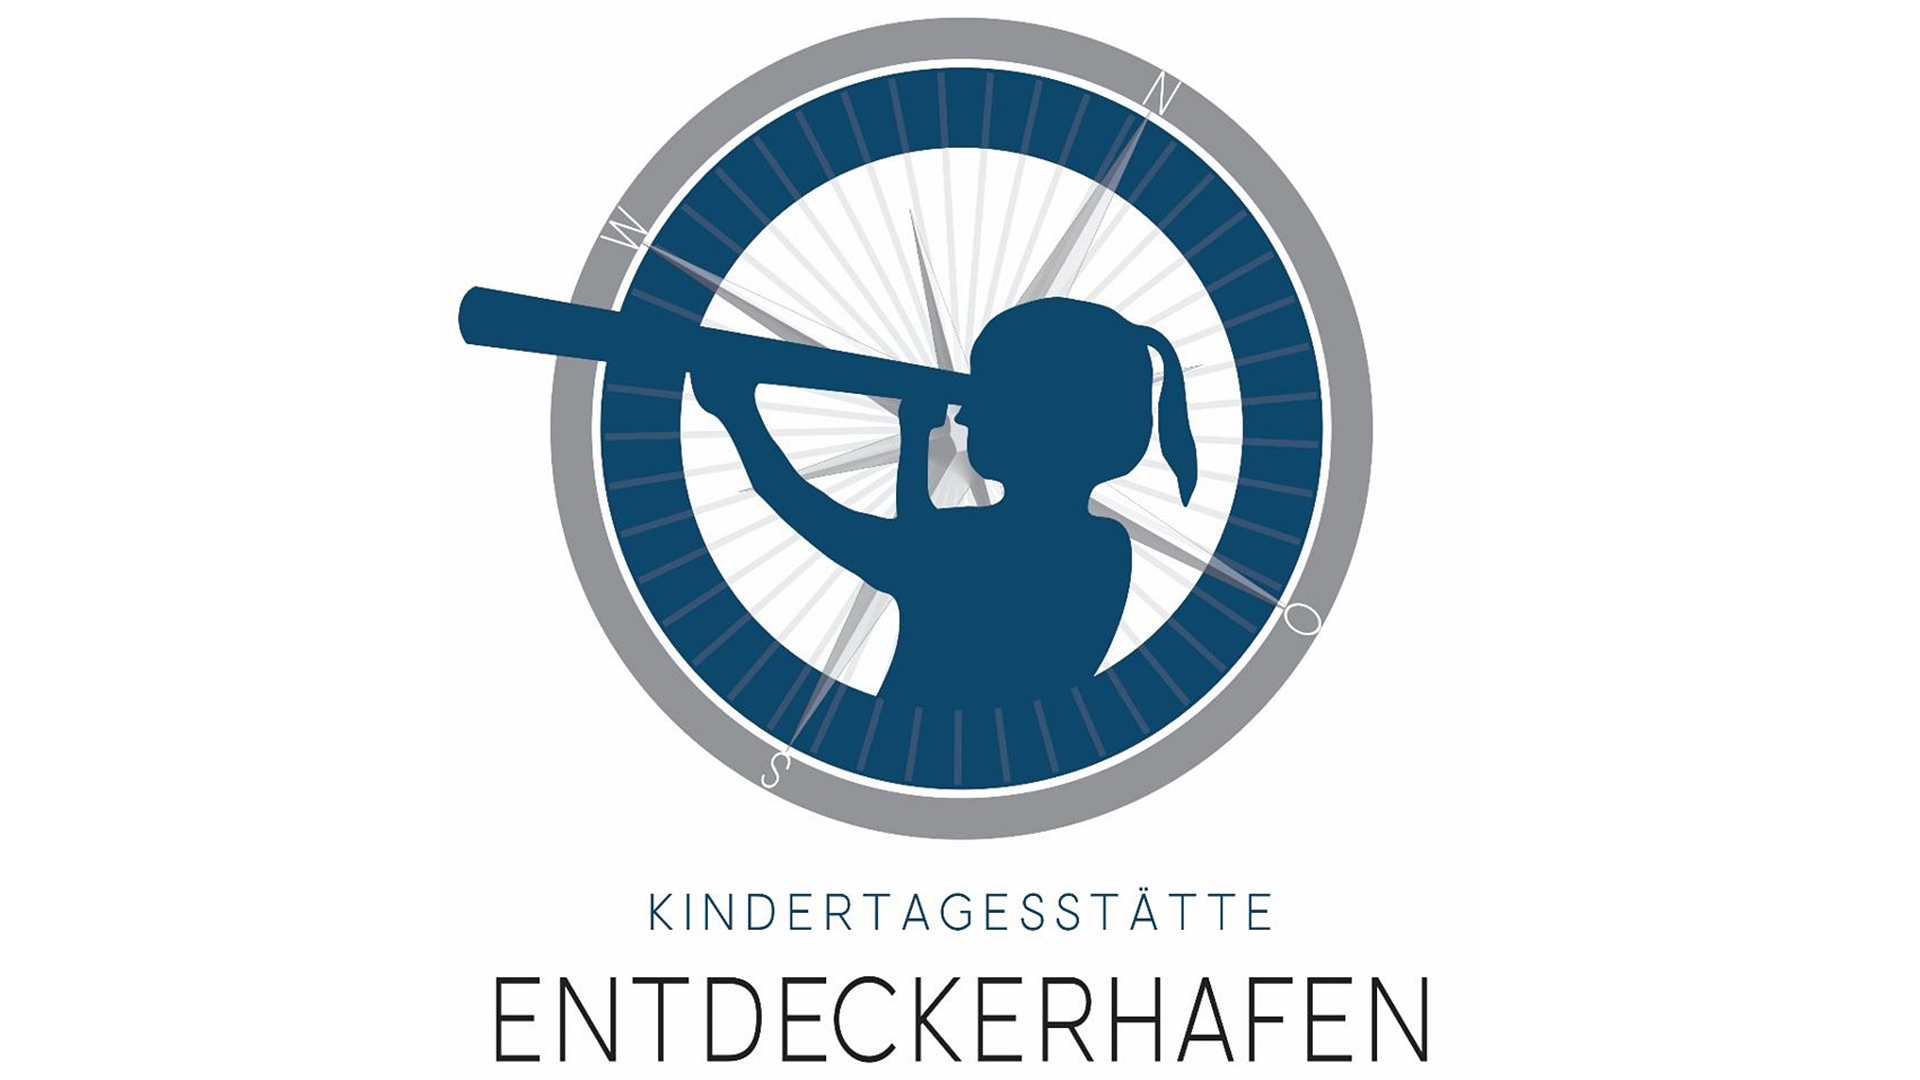 Ein Logo mit der Aufschrift "Kindertagesstätte Entdeckerhafen" und einem Schatten eines Mädchens welches in ein Fernrohr schaut umgeben von einem blaugrauen Rand.